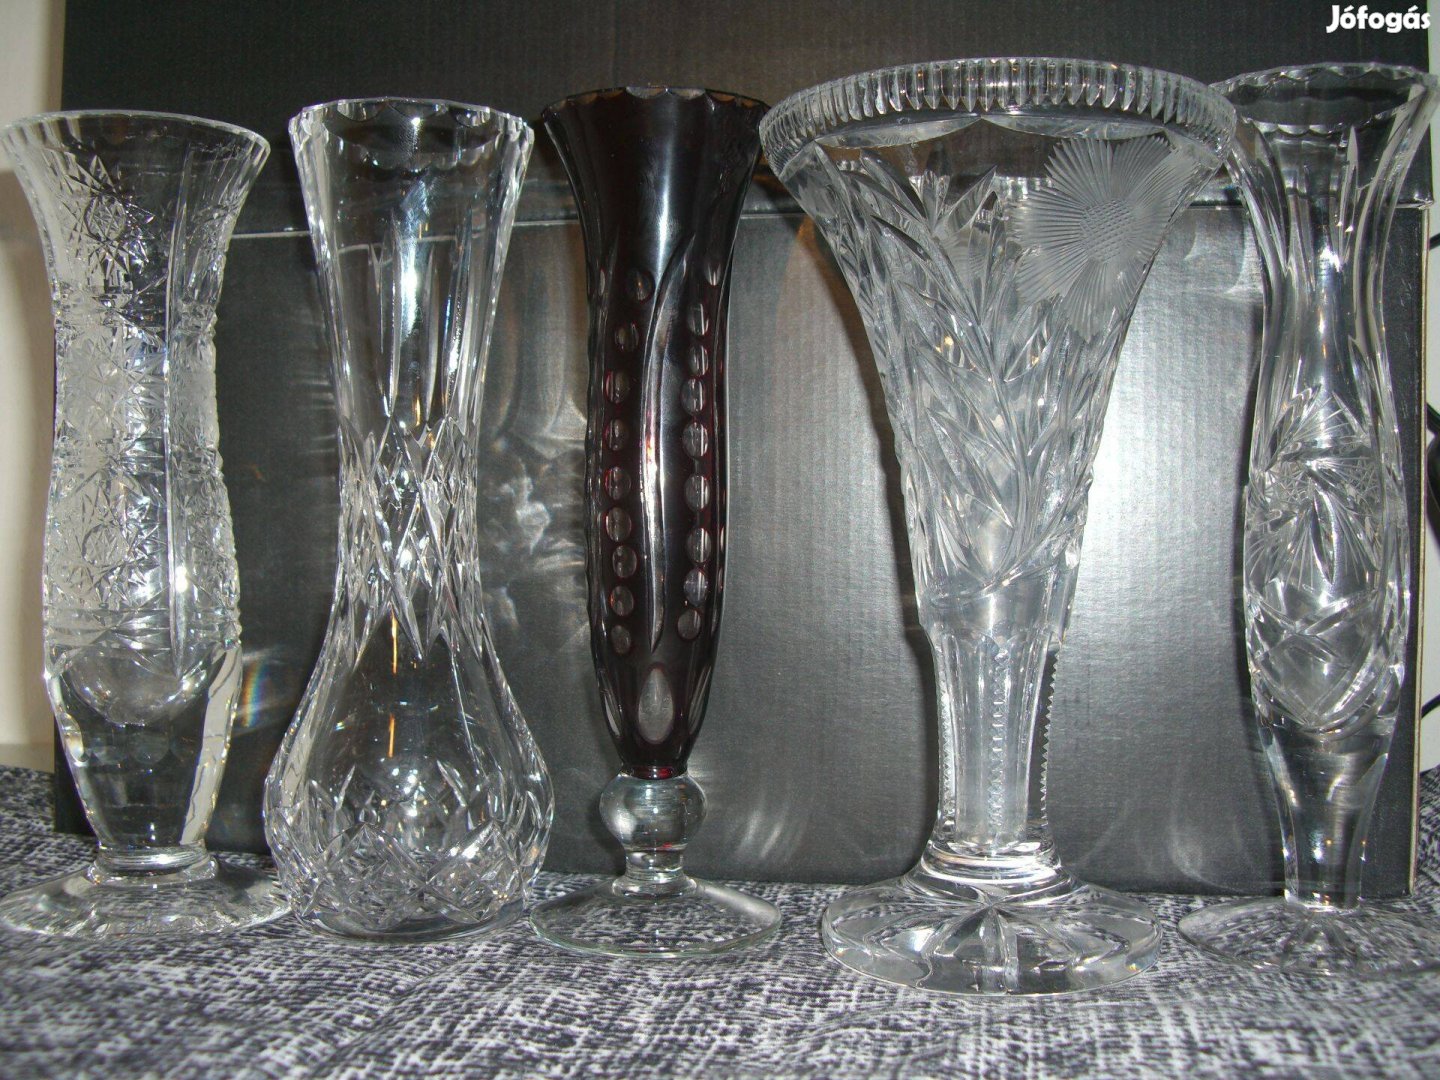 Metszett kristály Vázák 20 cm magassással